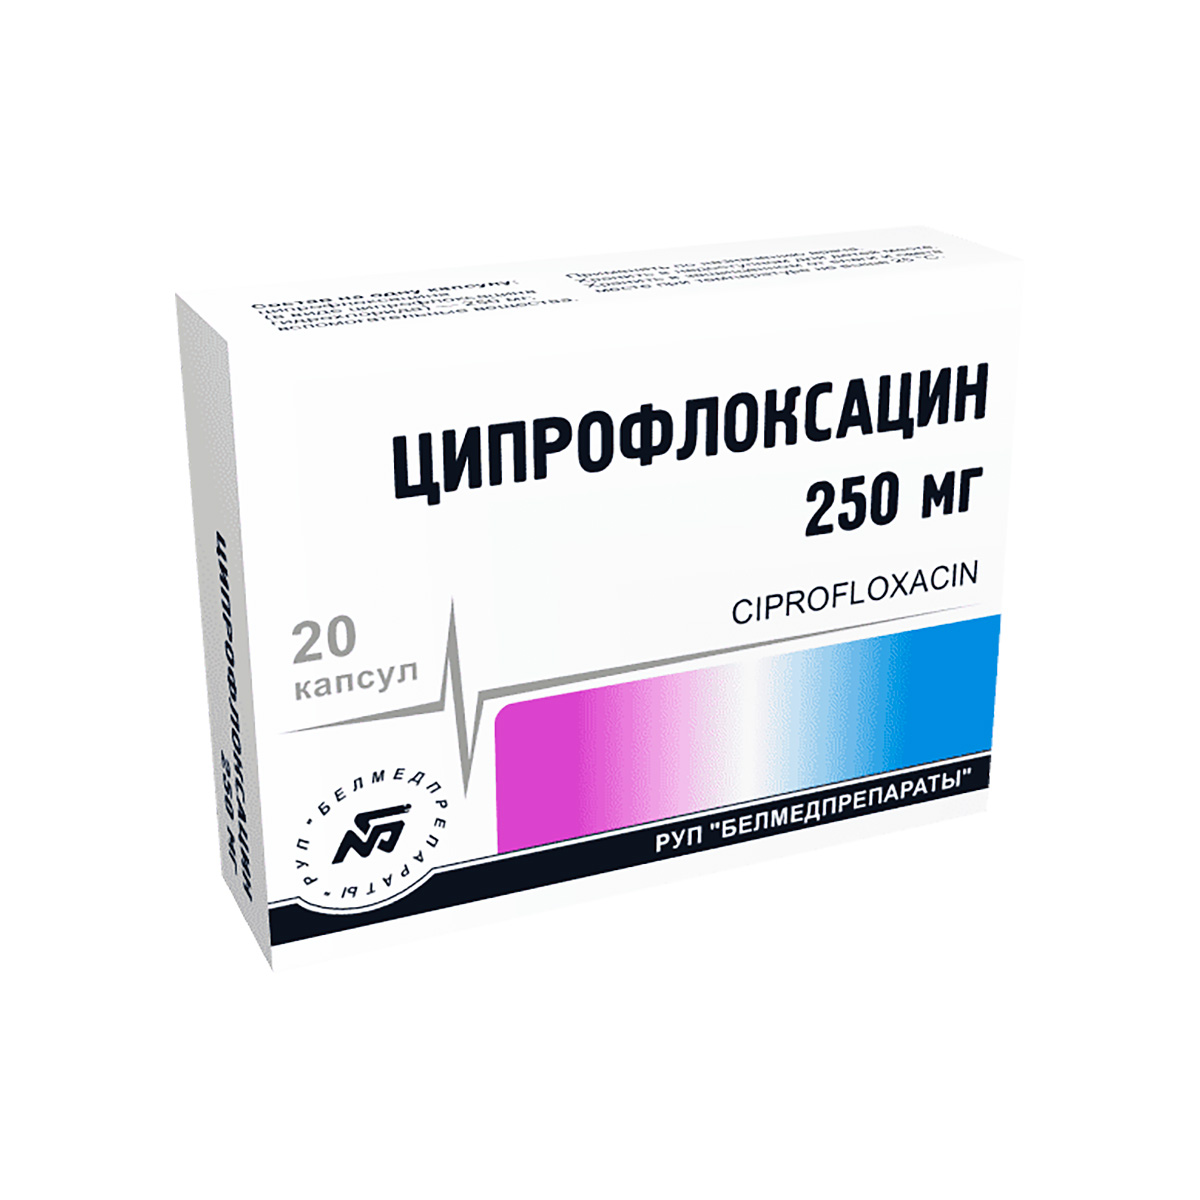 Ципрофлоксацин 250 мг капсулы 20 шт